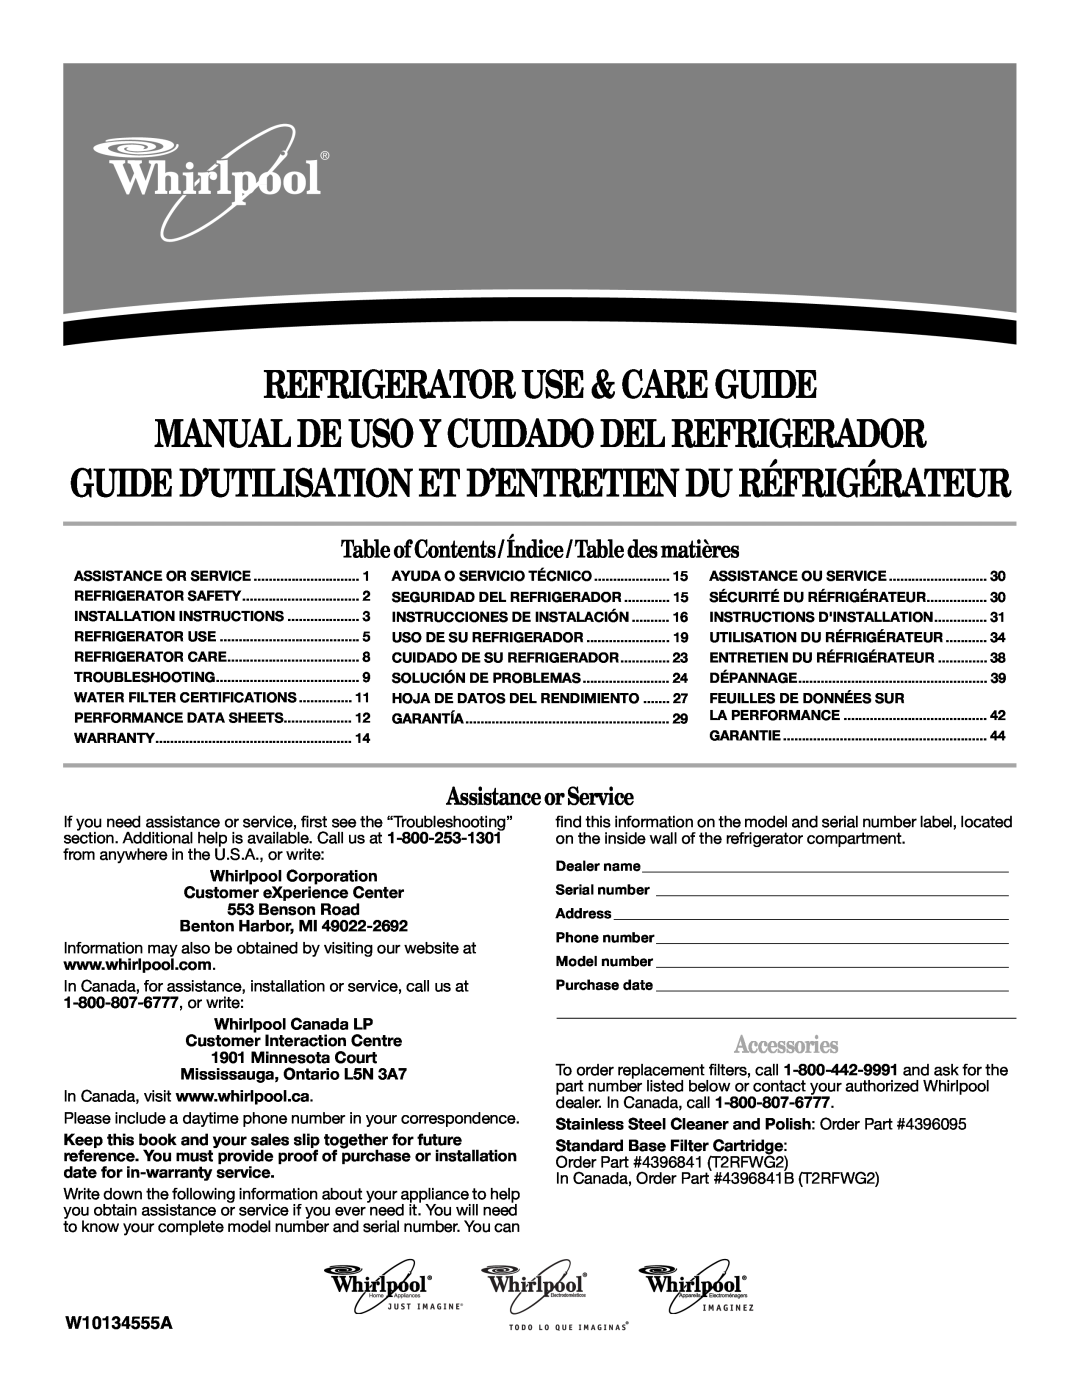 Whirlpool W10134555A warranty Manual De Uso Y Cuidado Del Refrigerador, Table of Contents/ Índice/ Table des matières 